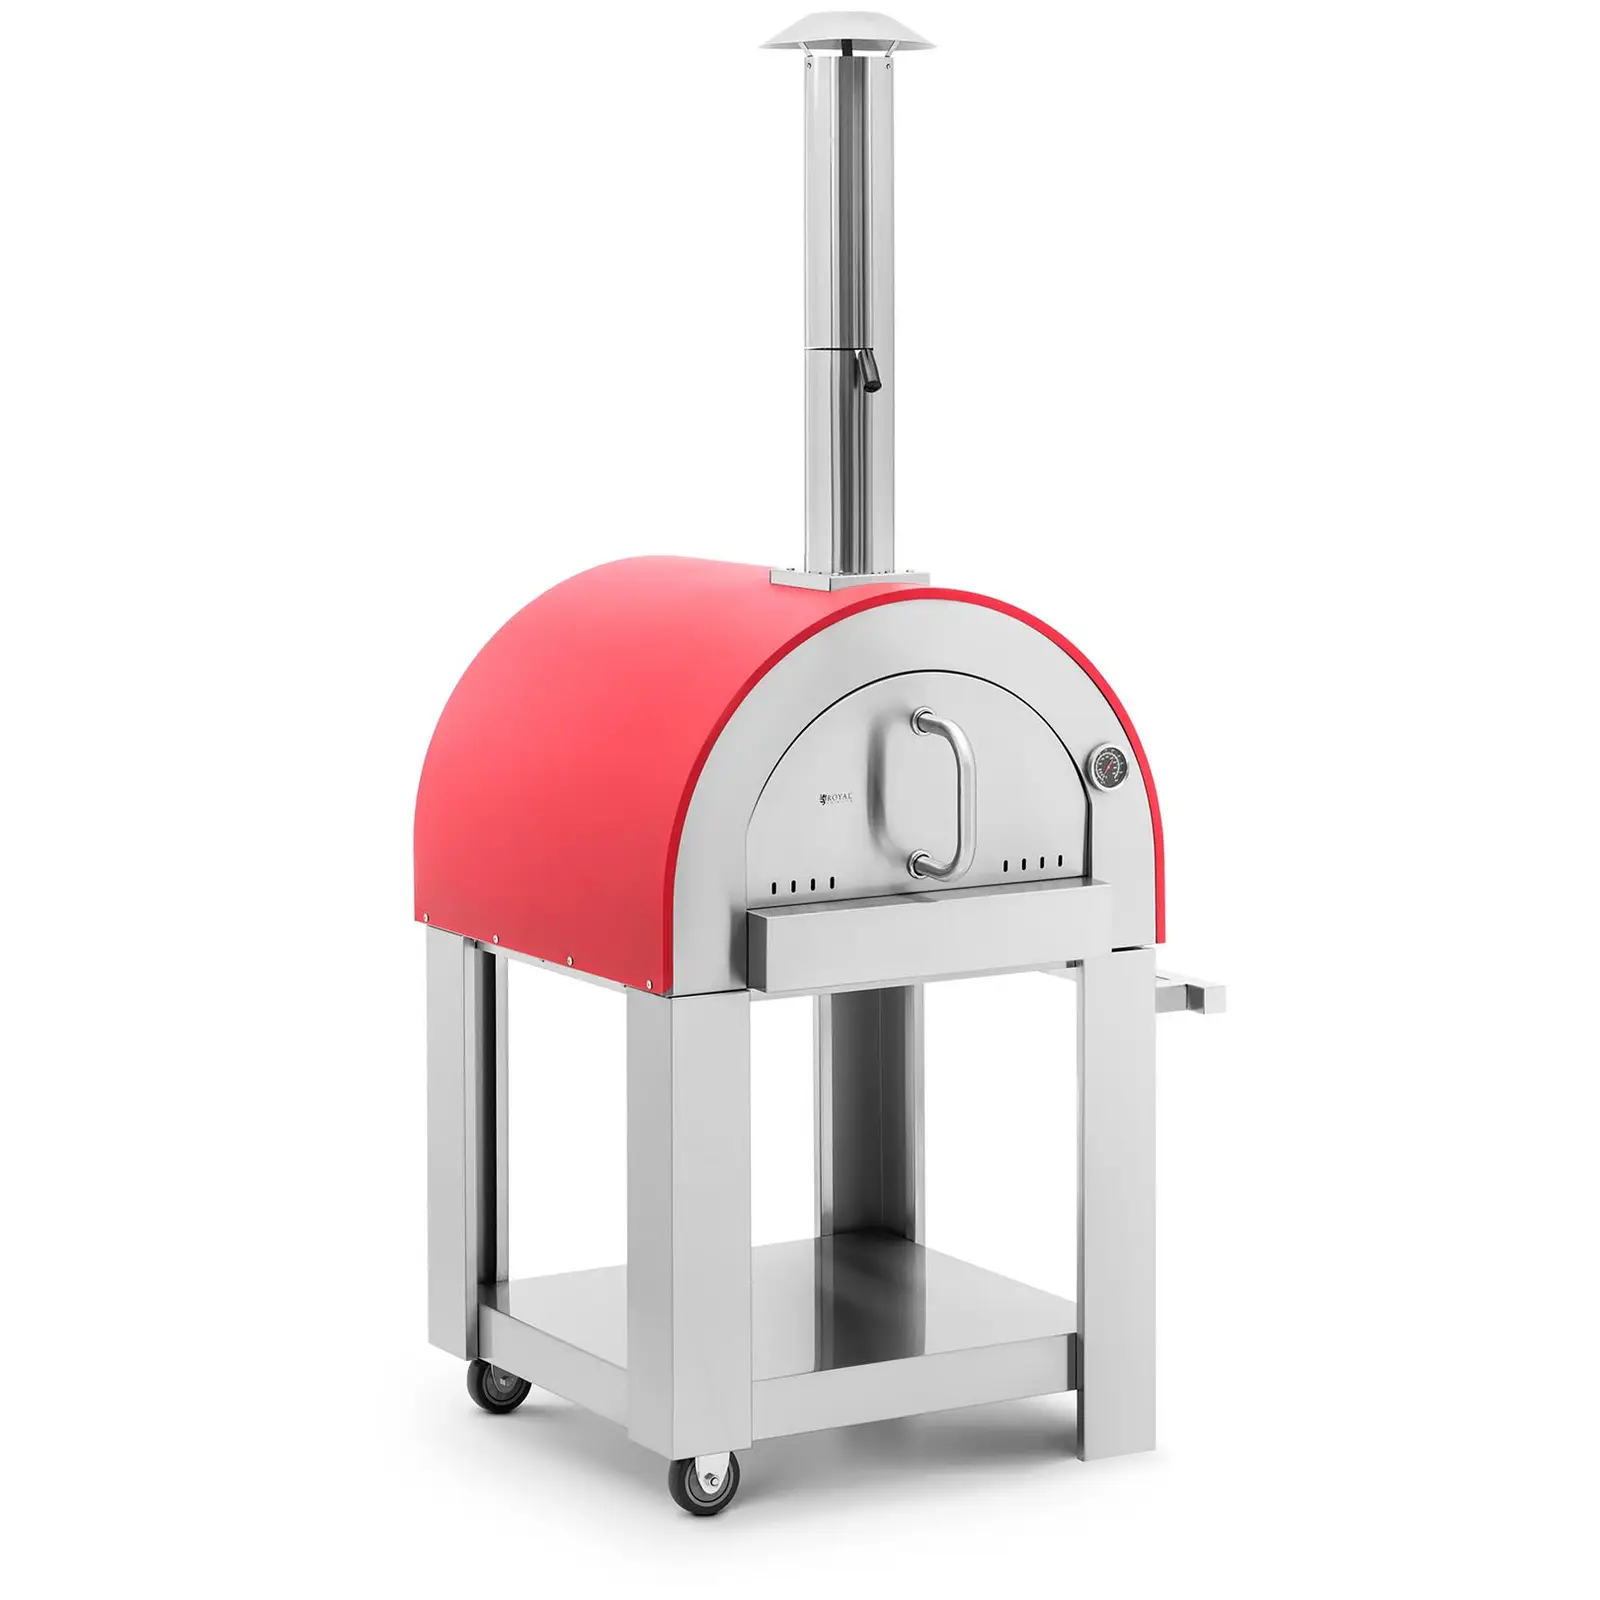 Fatüzelésű pizzasütő kemence - agyaglap - 500 °C - Ø 40,5 cm - Royal Catering